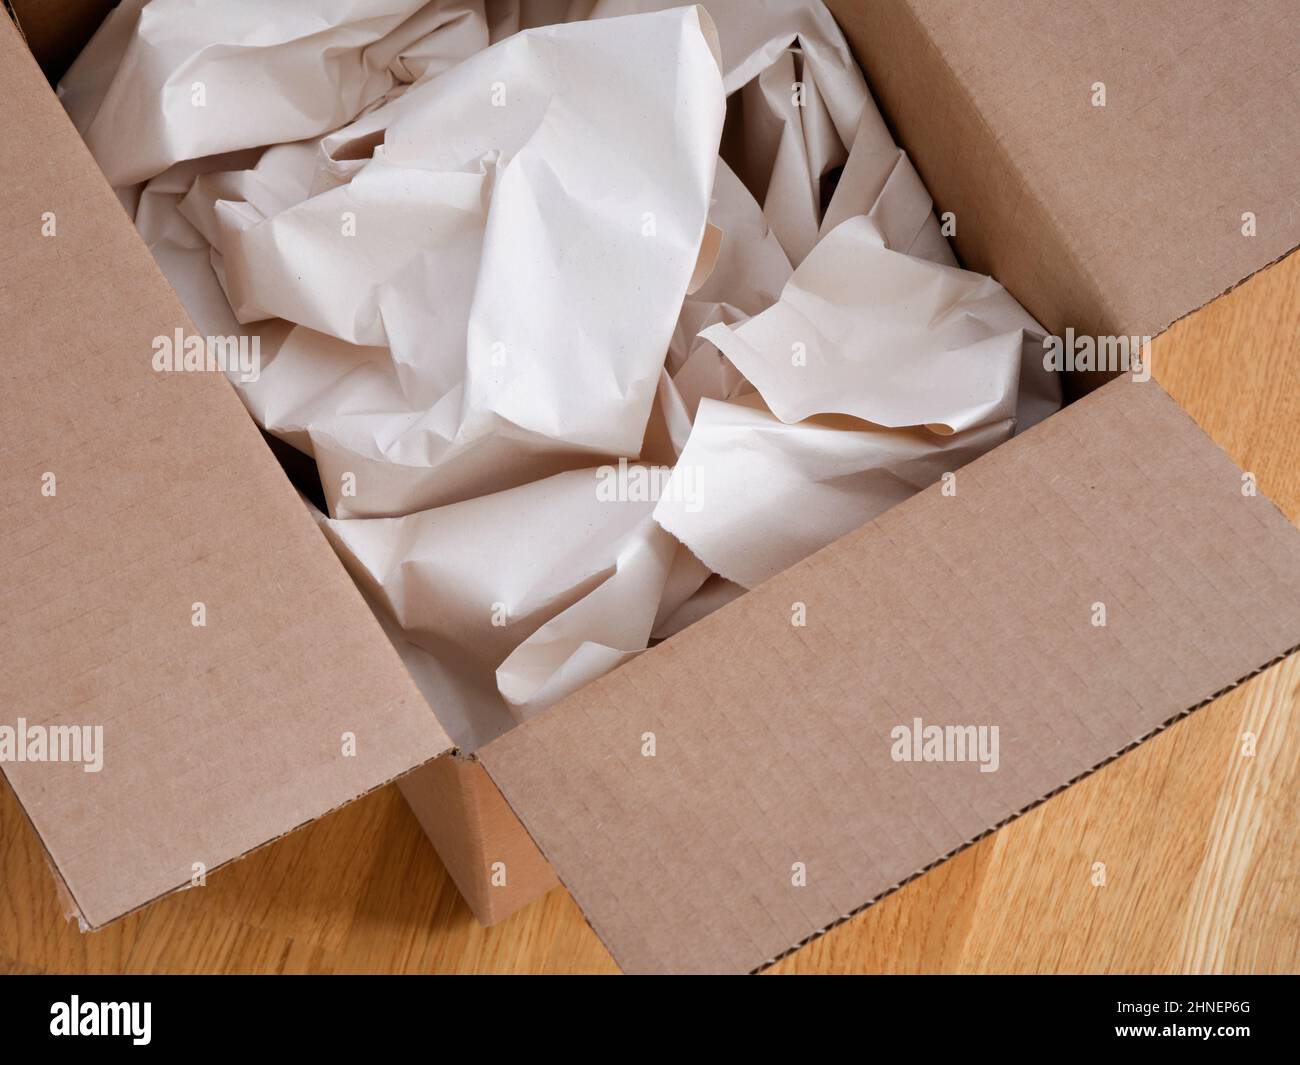 Crumpled paper in a cardboard box. Close up. Stock Photo